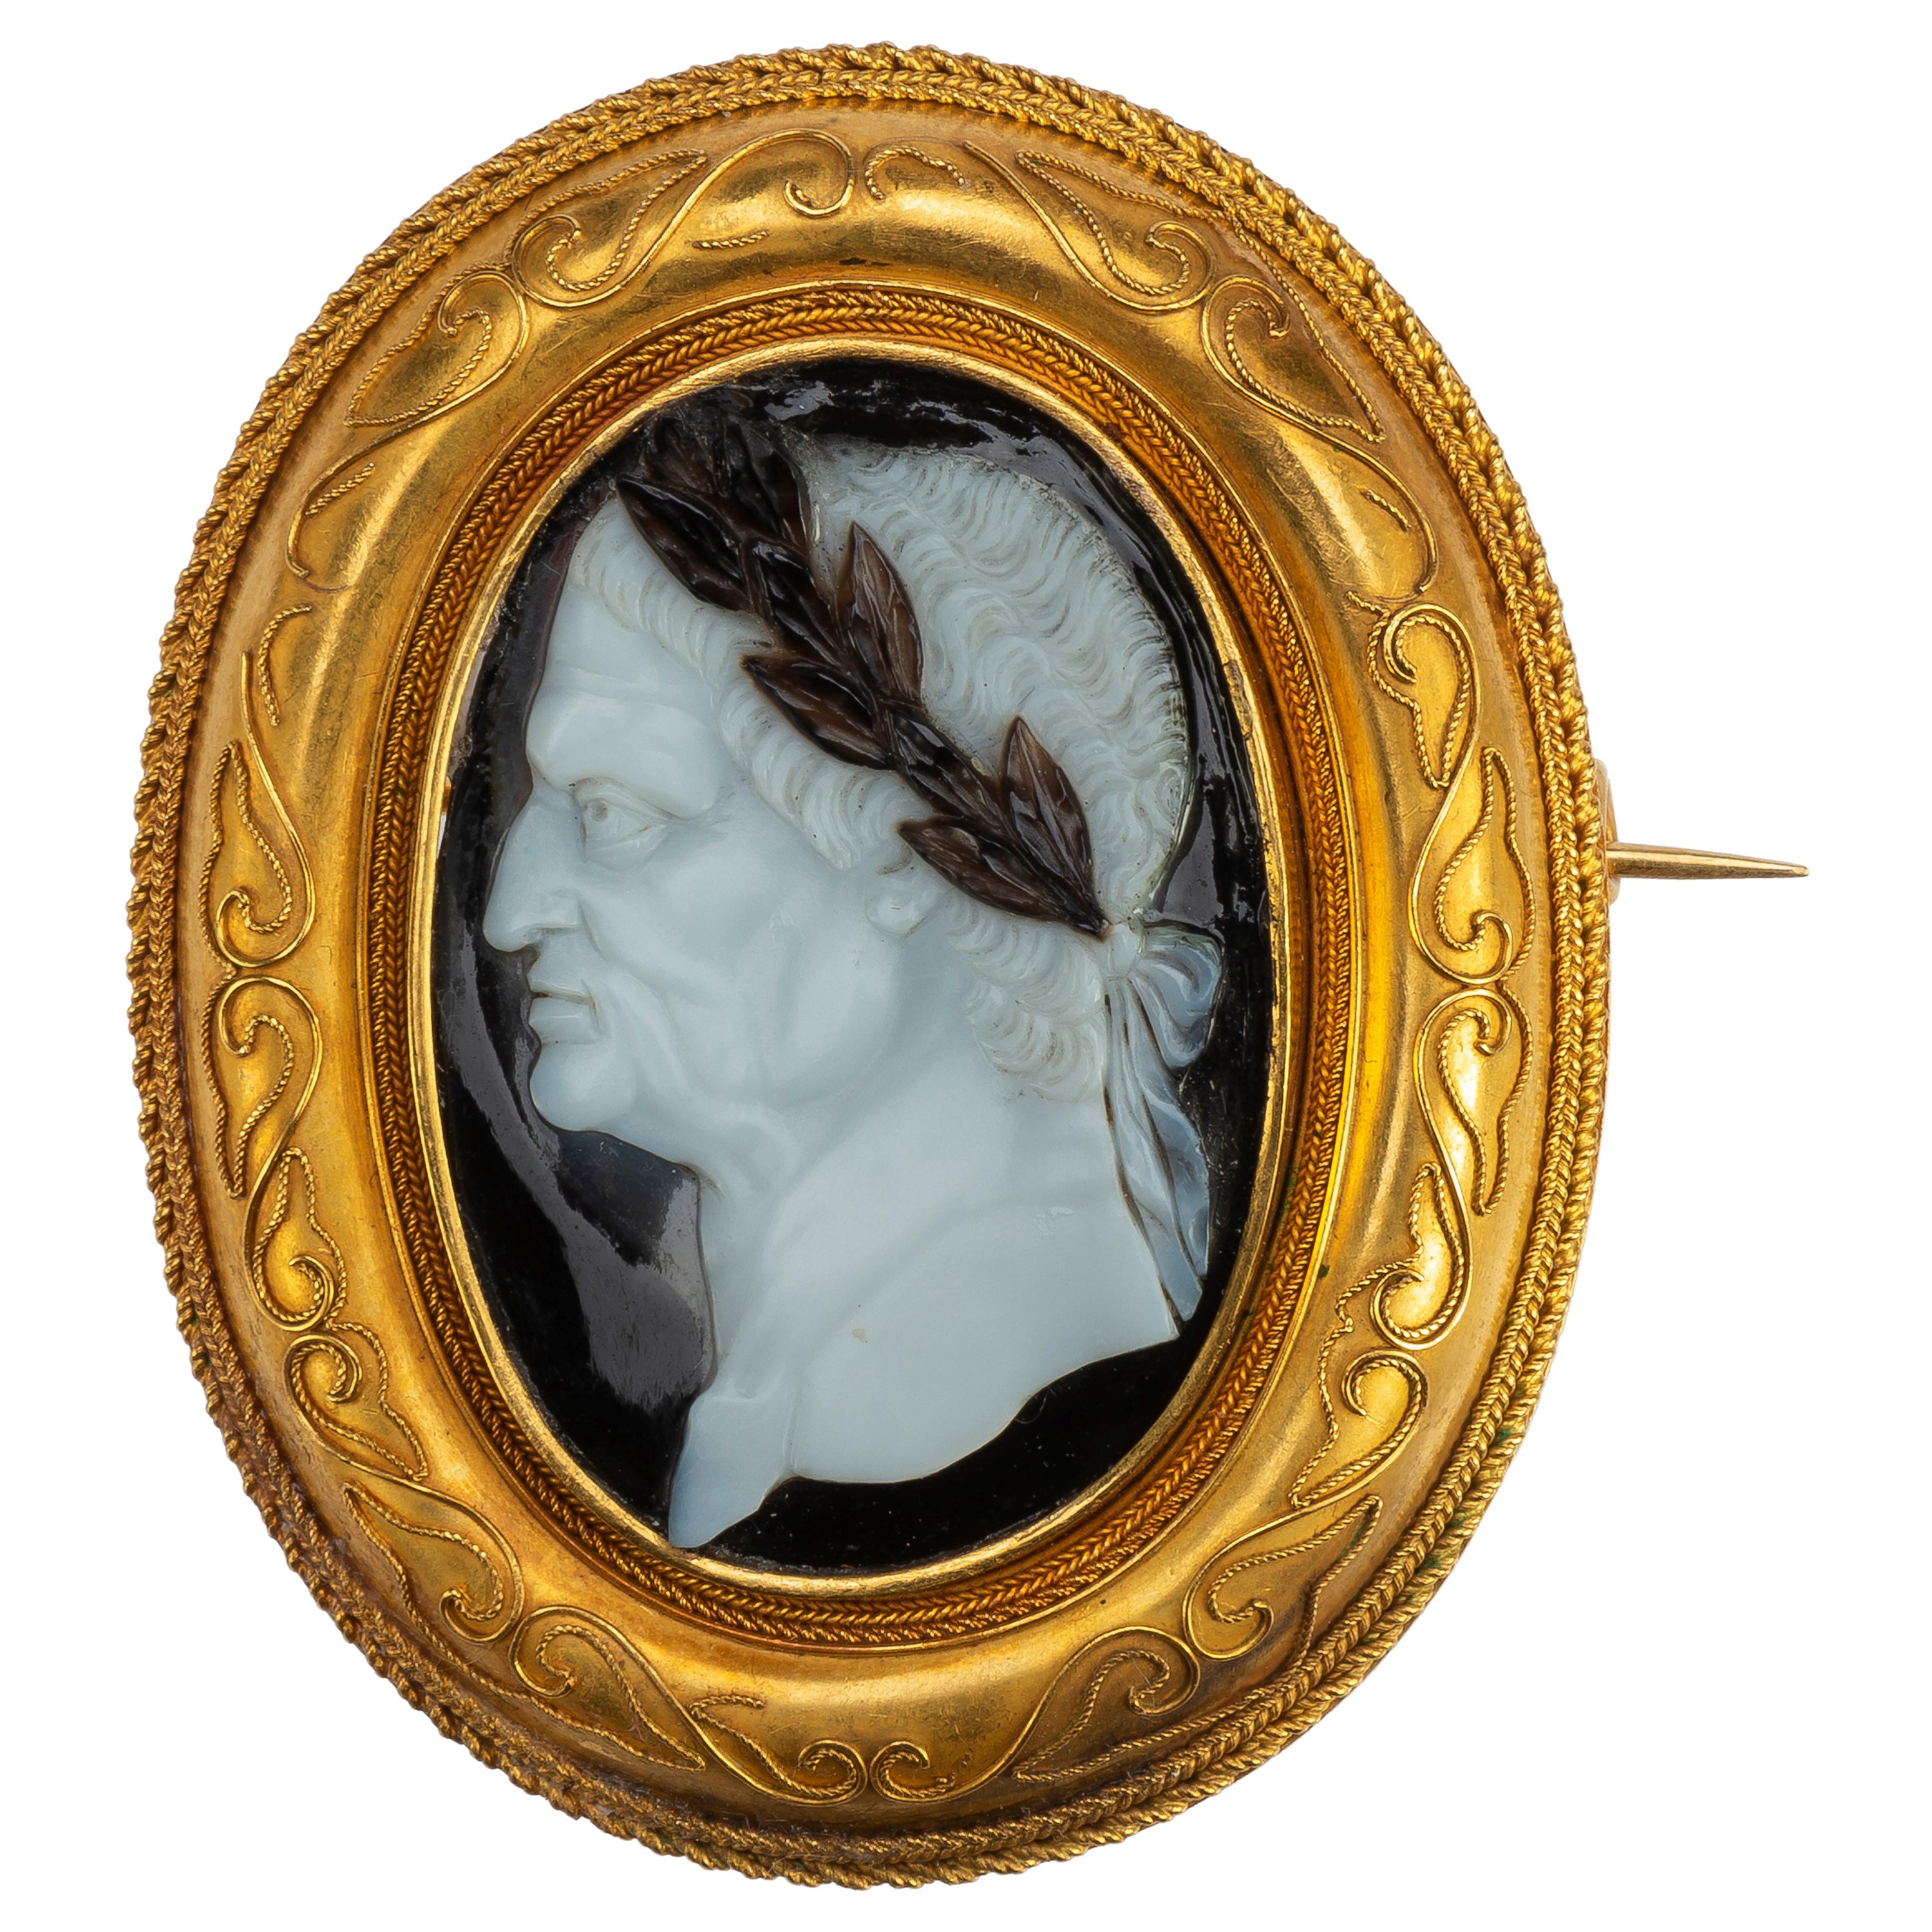 Porträtkamee des Kaisers Vespasian aus der Renaissance in einer Goldbrosche